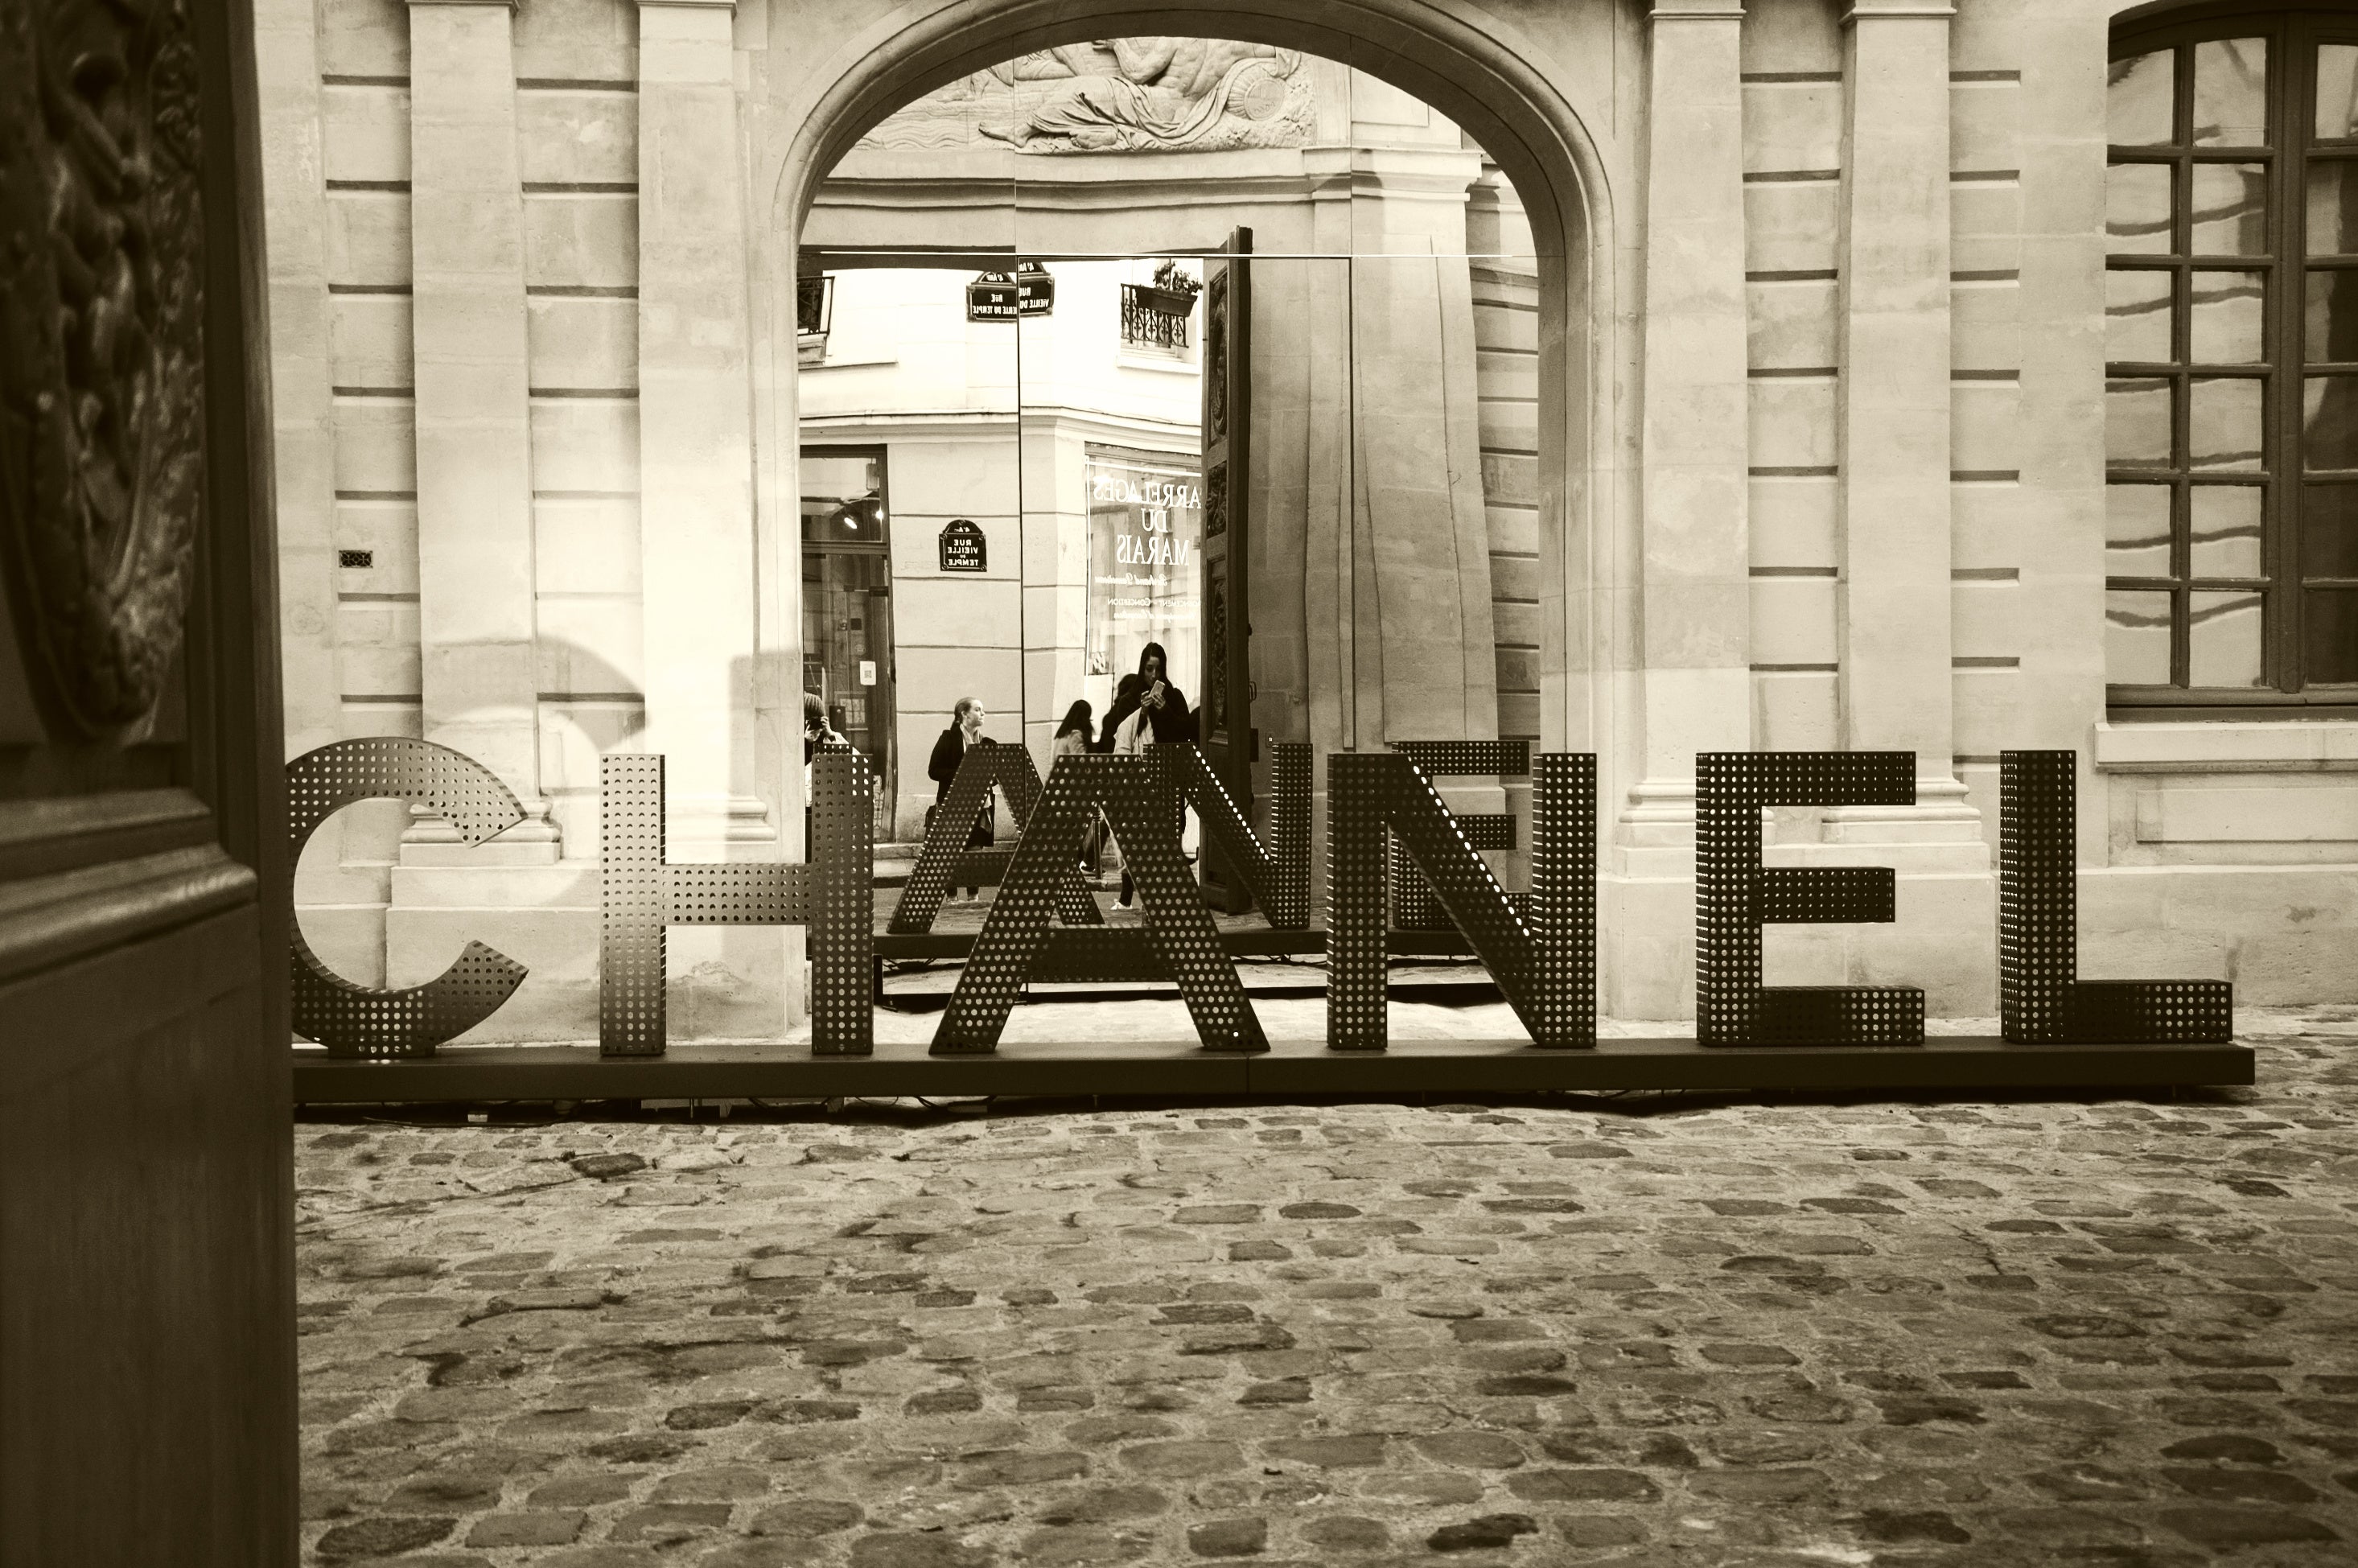 A Brief History of Chanel Handbags